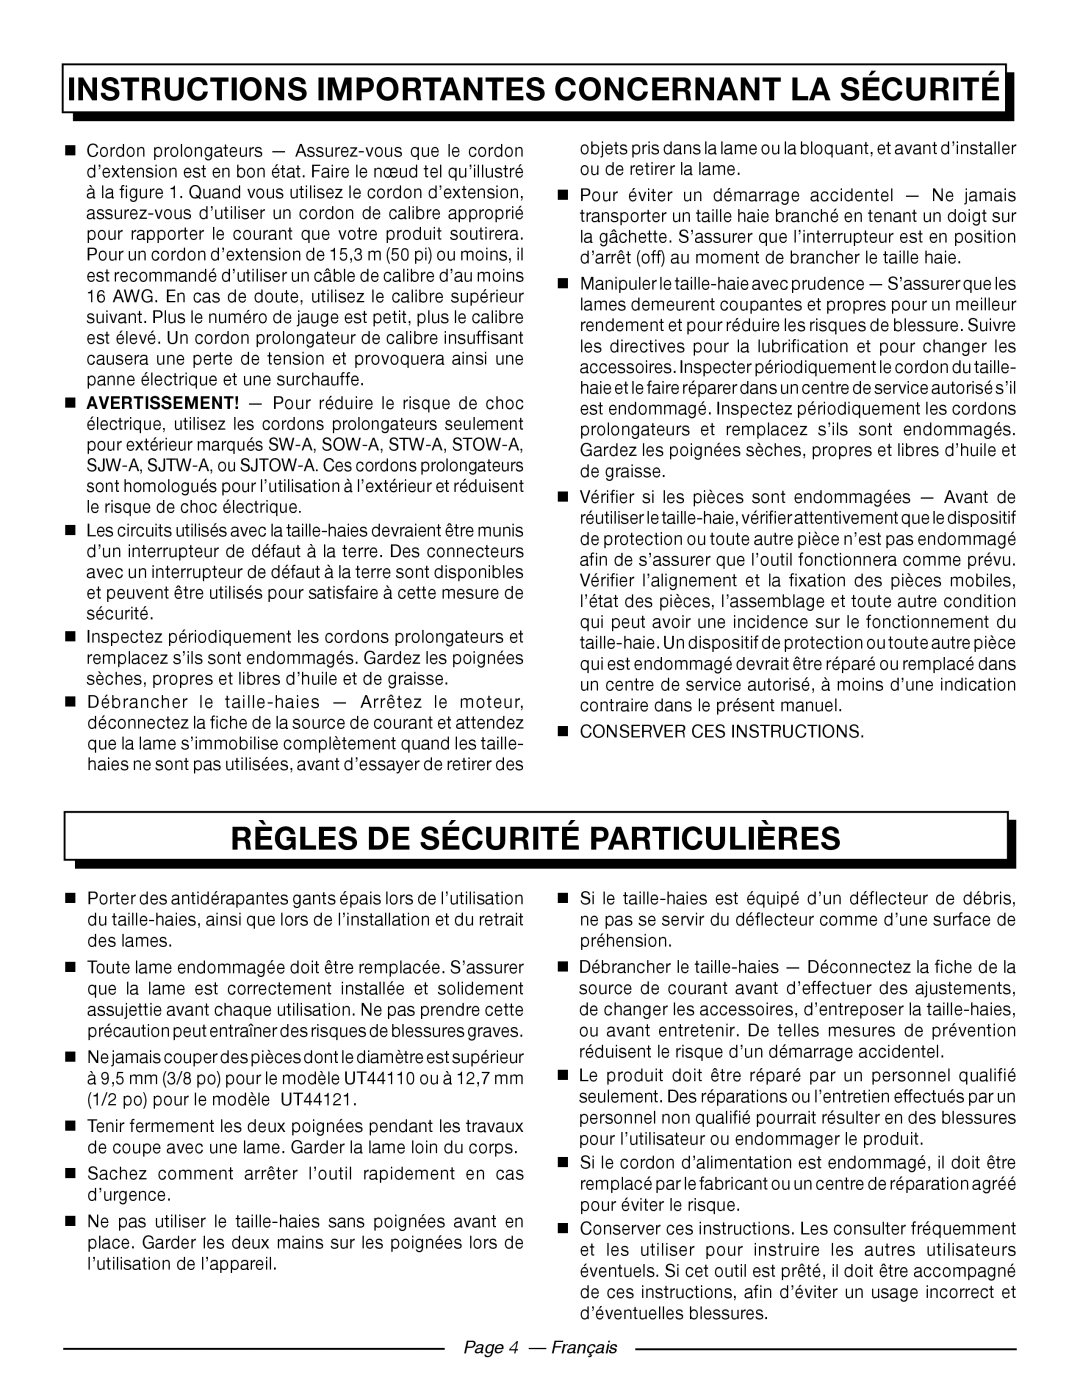 Homelite UT44121 Règles De Sécurité Particulières, Page 4 - Français, Instructions Importantes Concernant La Sécurité 